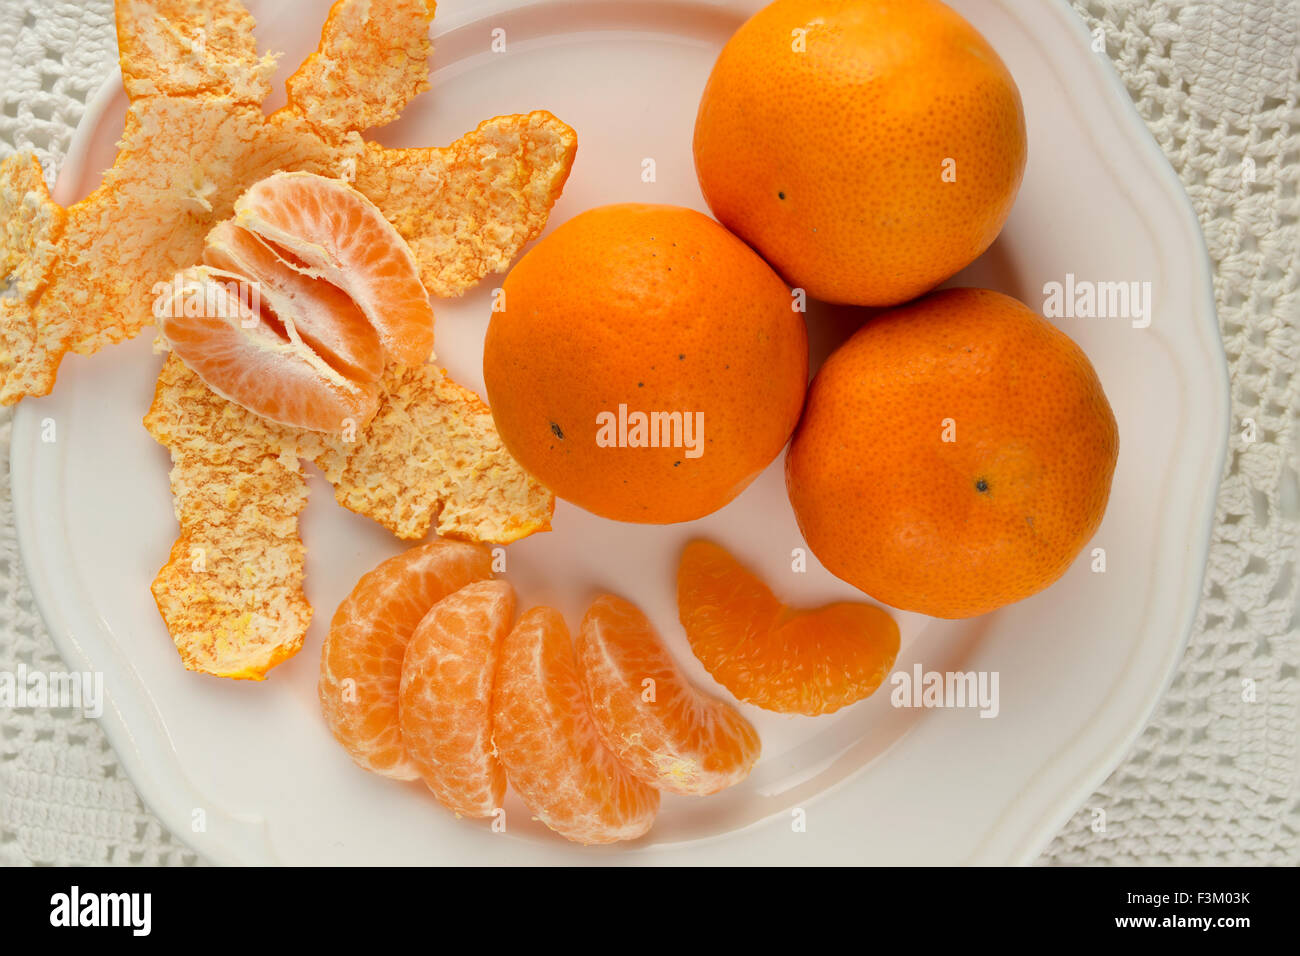 Les oranges juteuses sur une plaque blanche avec pèle Banque D'Images